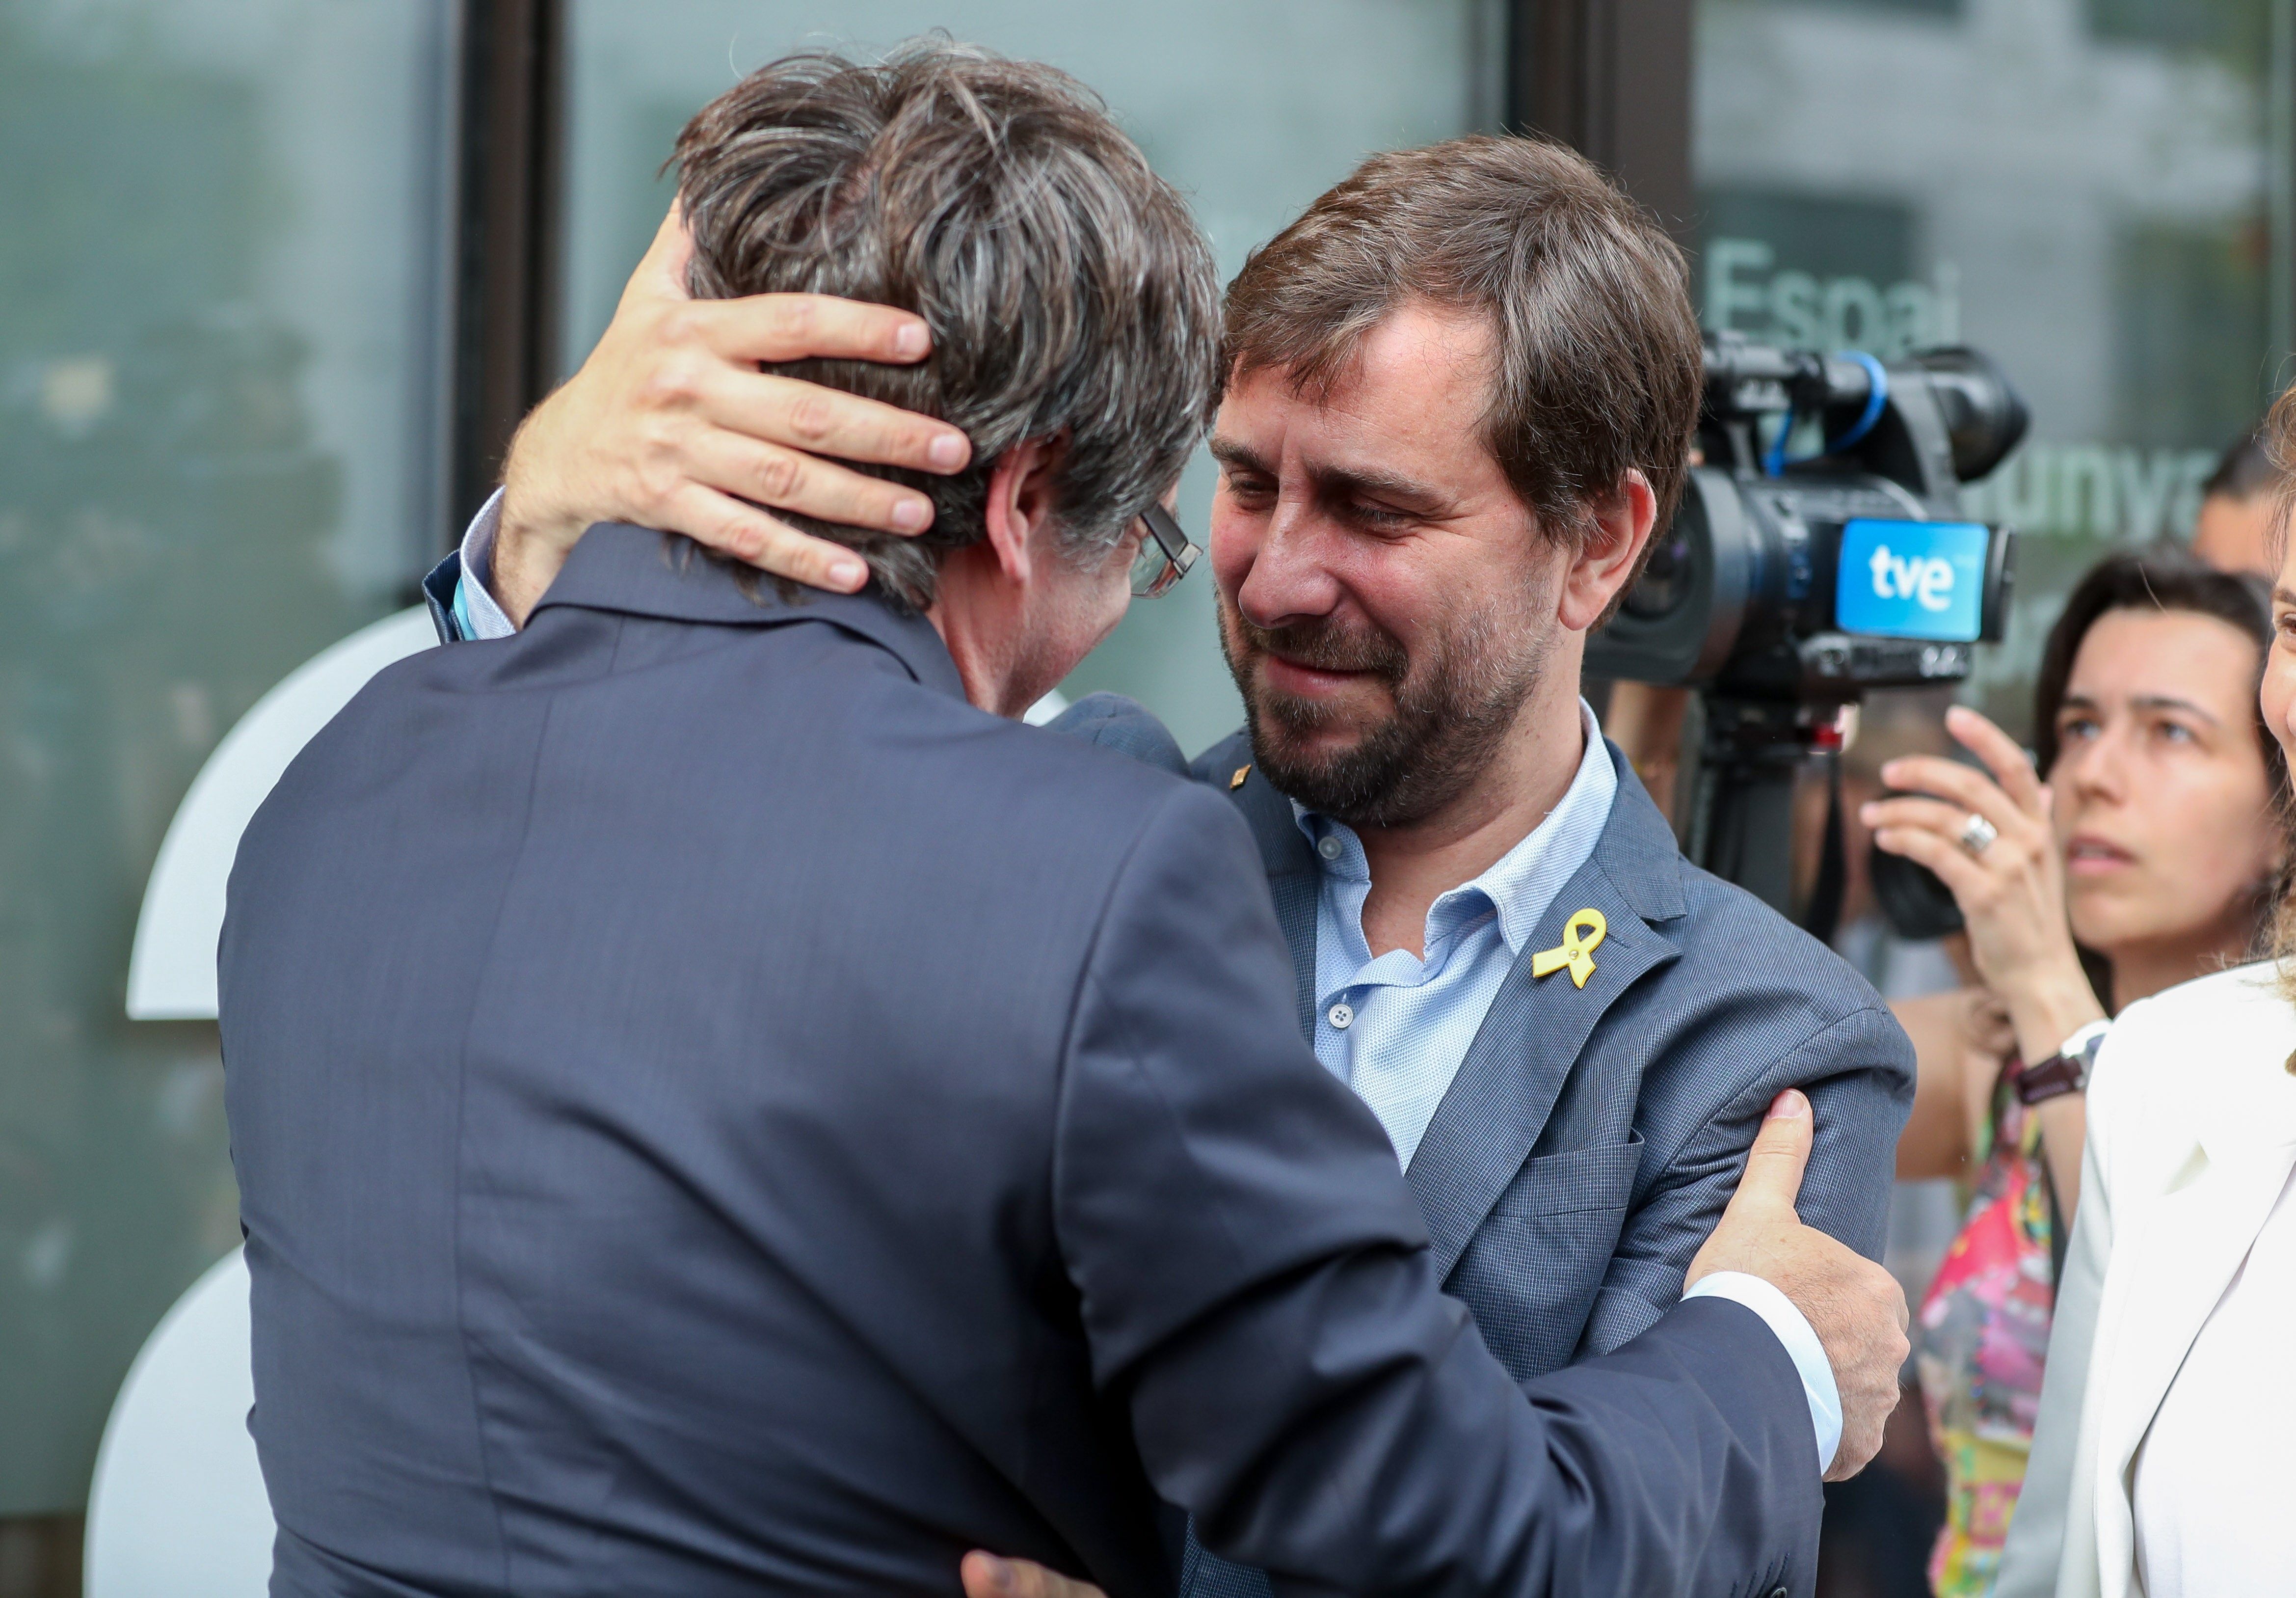 El emotivo abrazo de Comín a Puigdemont